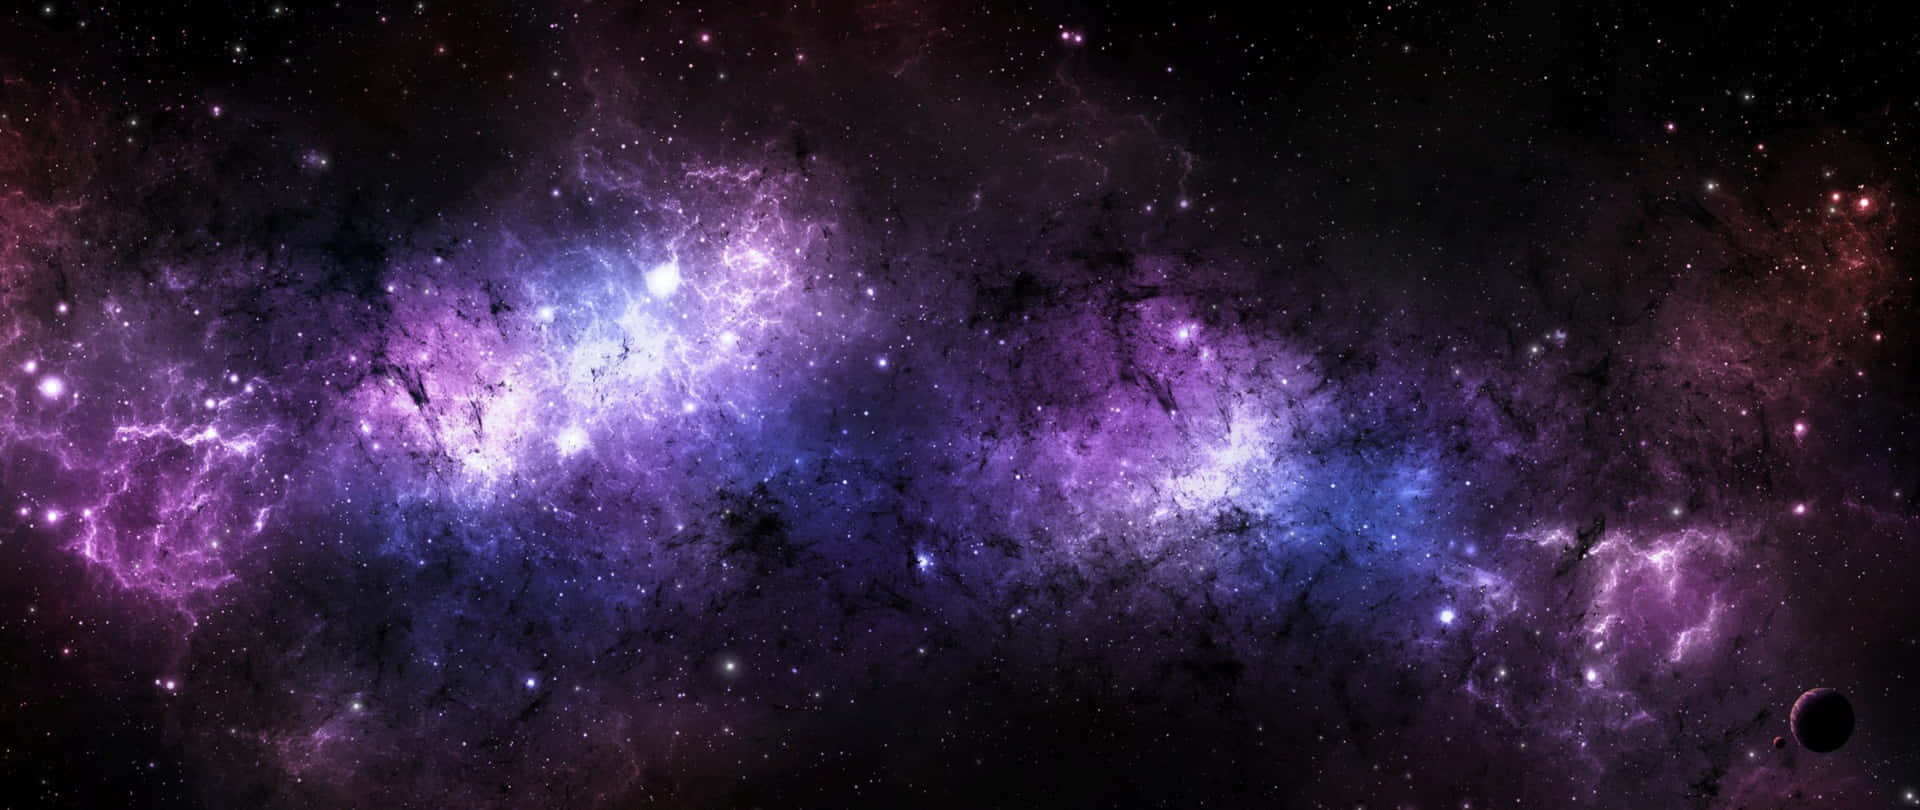 Unaasombrosa Visión De Una Deslumbrante Galaxia Negra Y Morada. Fondo de pantalla